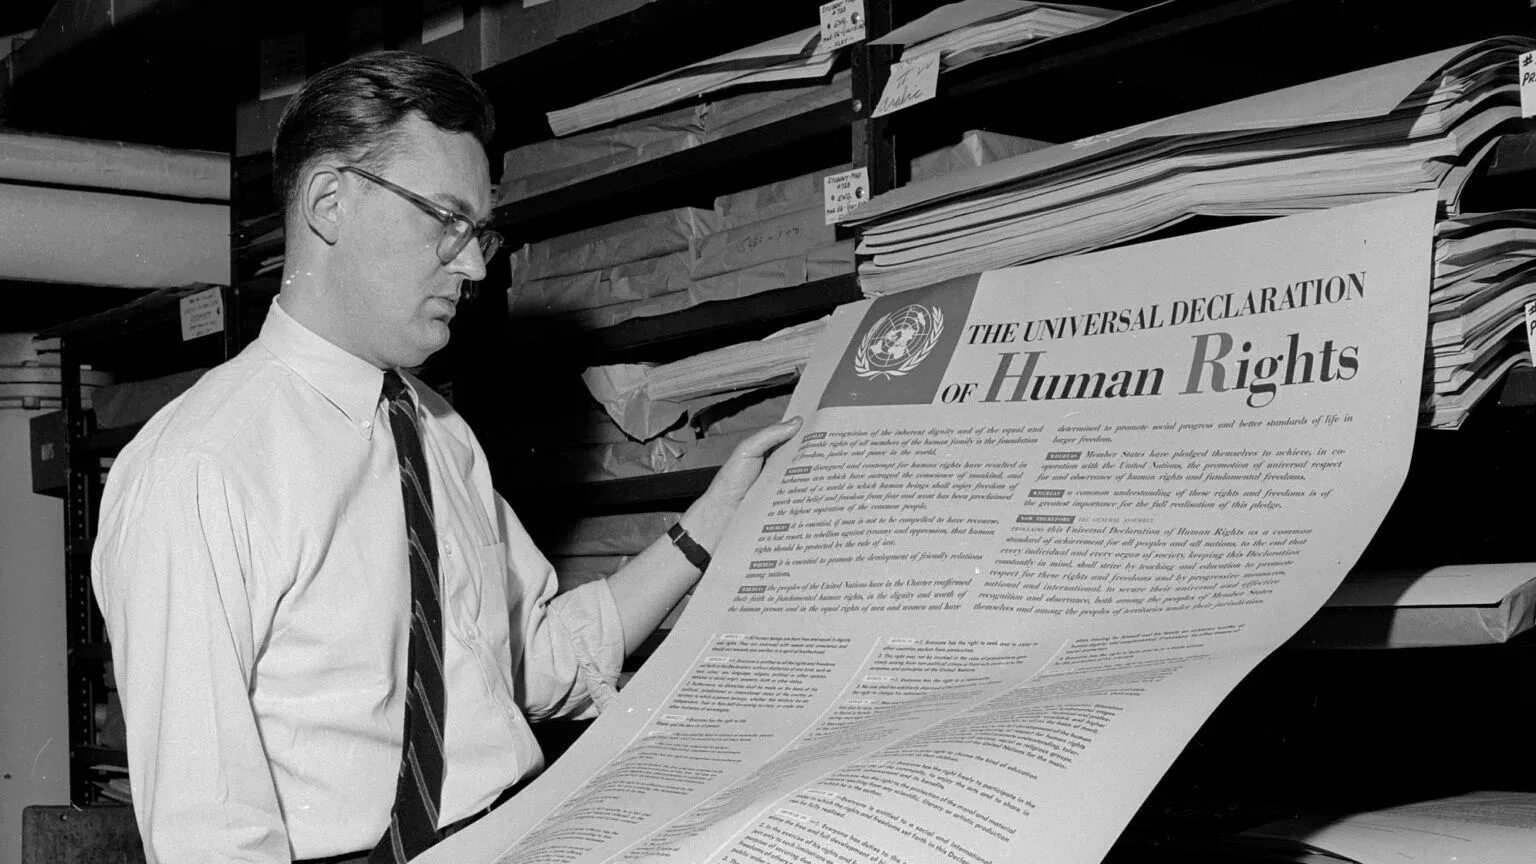 Оон 1977. Всеобщая декларация прав человека 1948 года. Генеральной Ассамблеей ООН 10 декабря 1948 года. Декларация прав человека ООН 1948. Всеобщая декларация прав человека 10 декабря 1948 года.